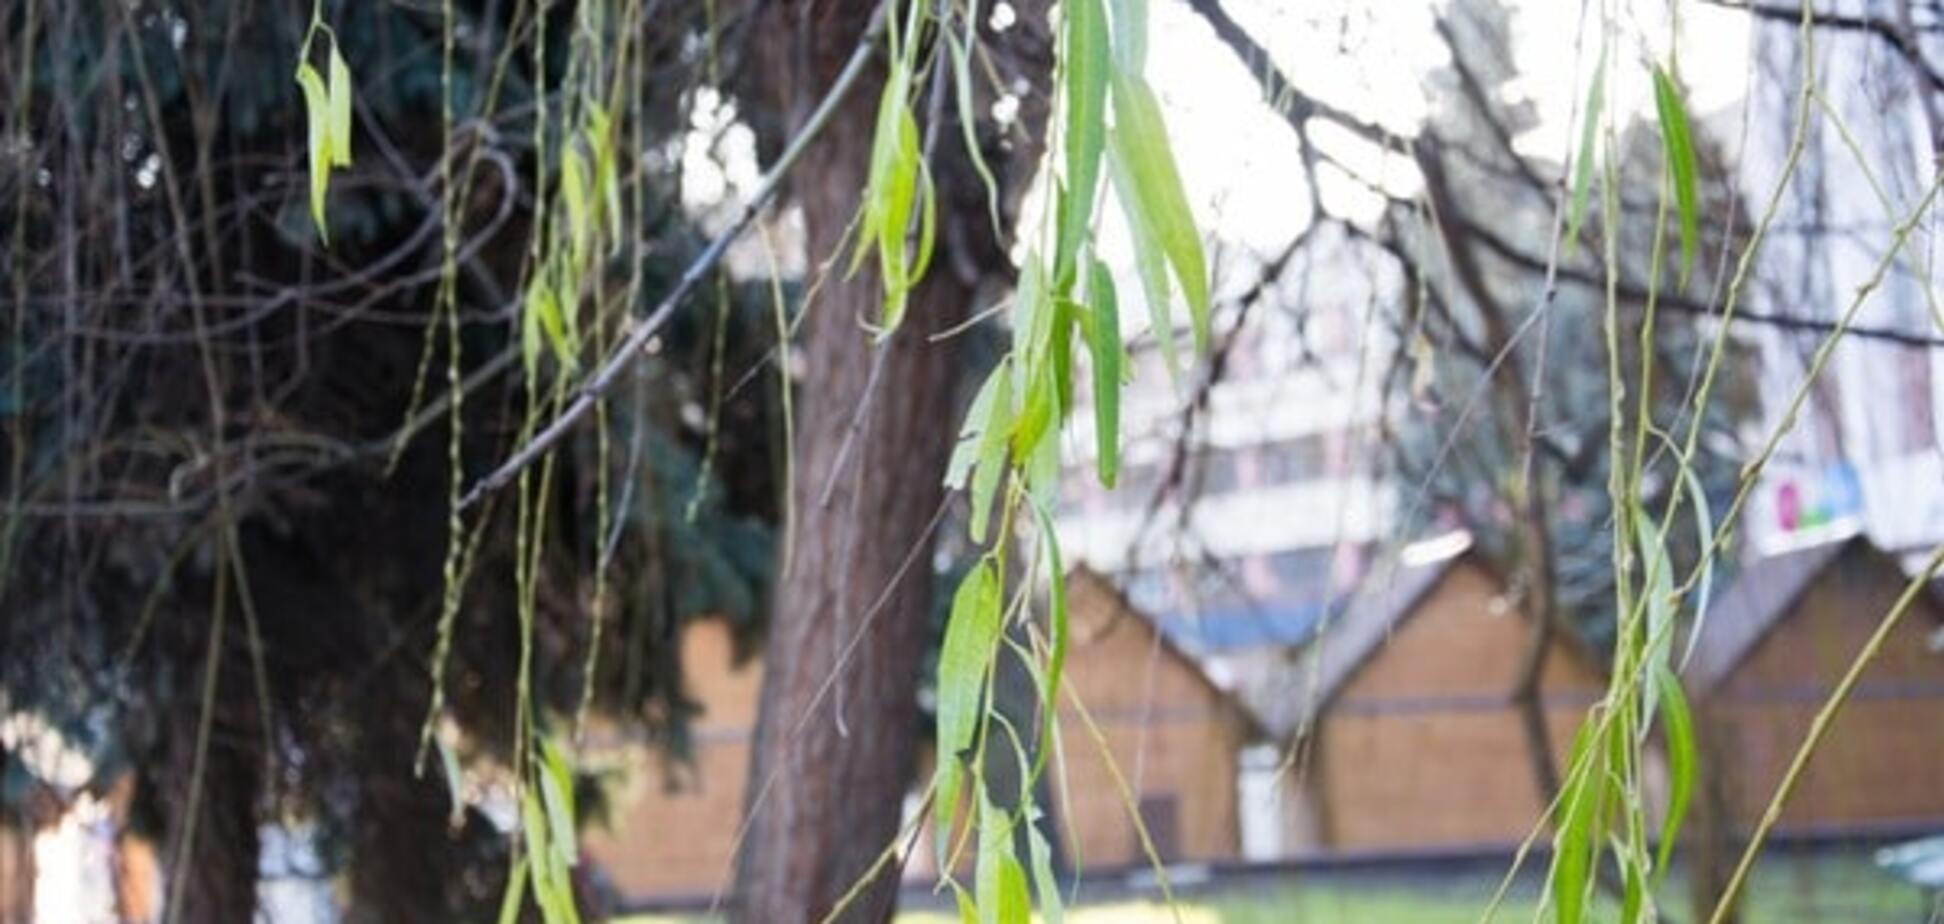 Под Новый год в Ивано-Франковске на деревьях появилась зеленая листва: опубликованы фото